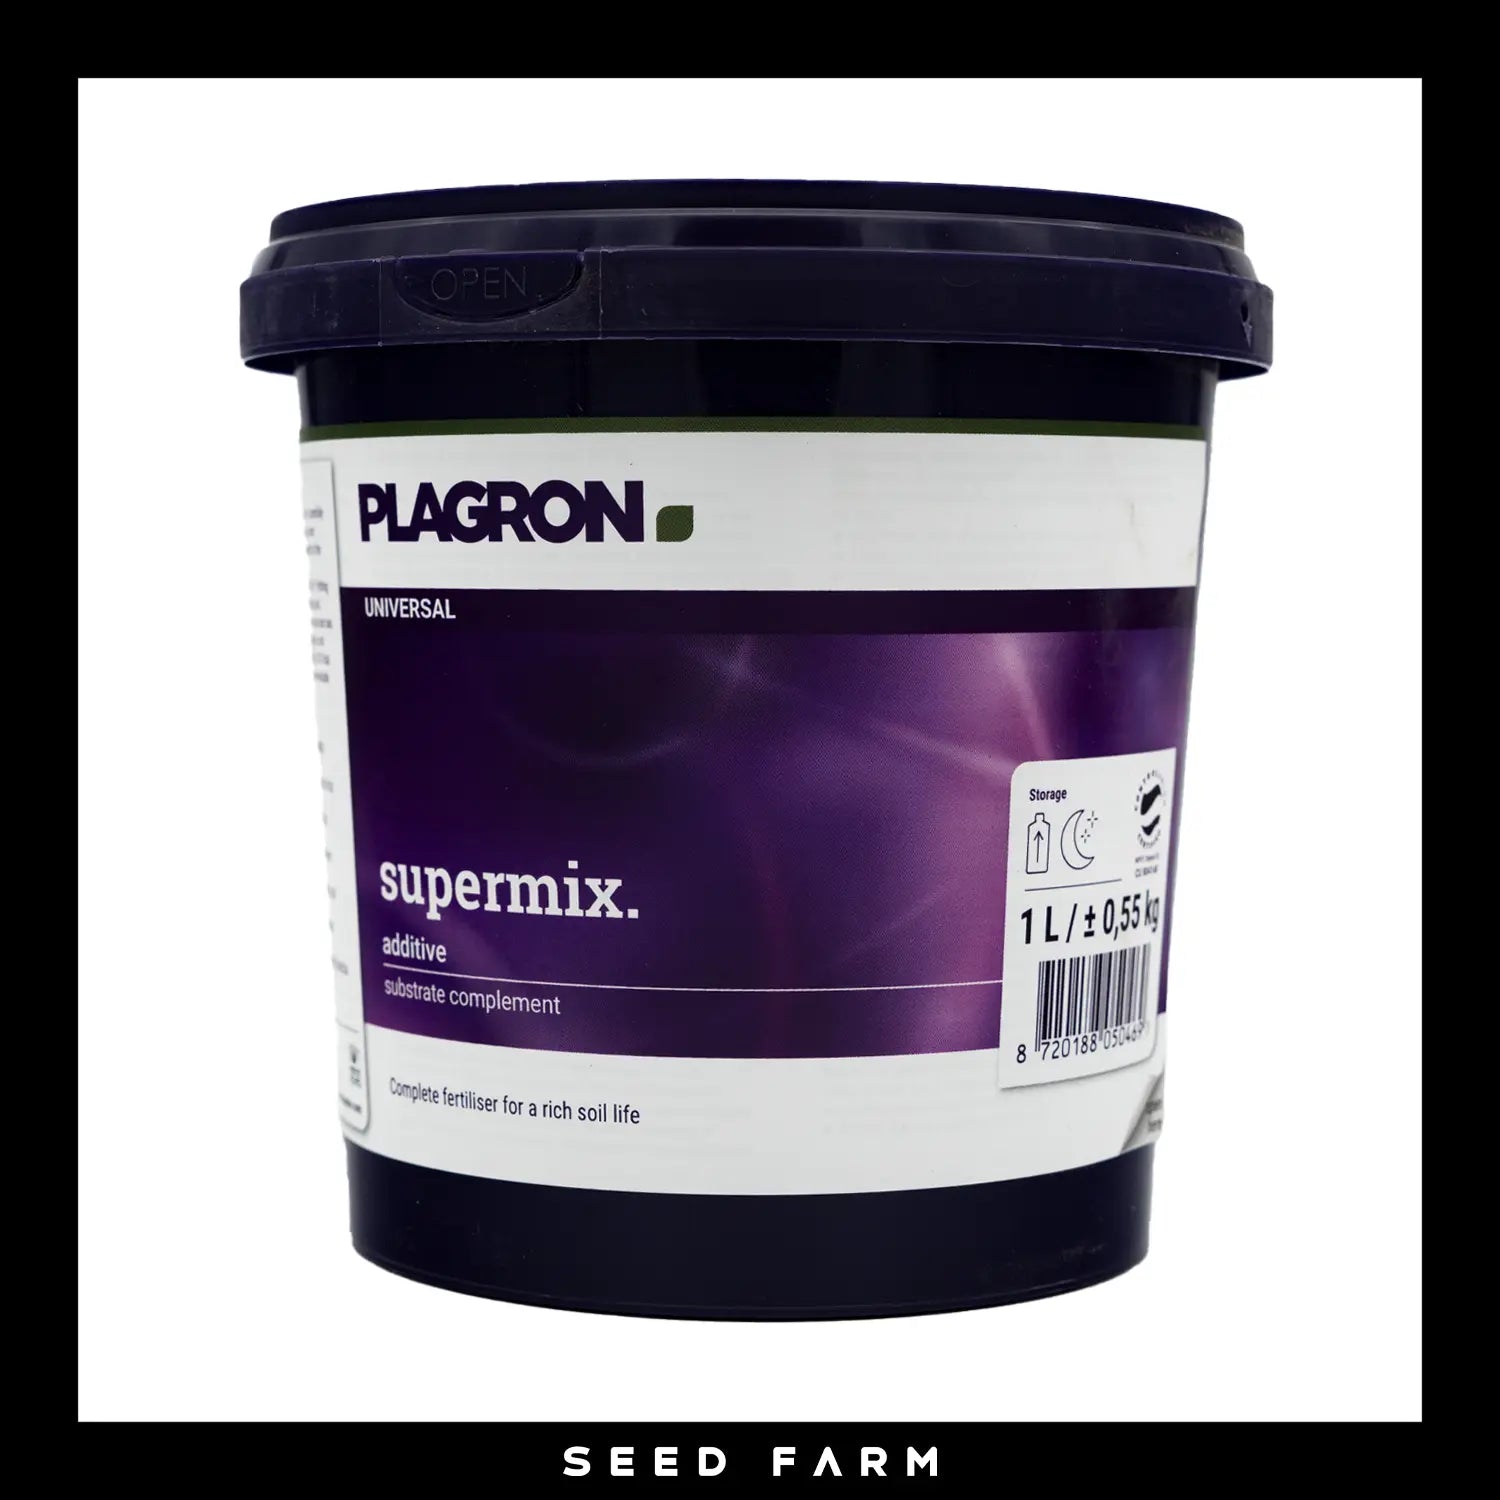 Plagron Supermix, biologischer Volldünger, Verpackung